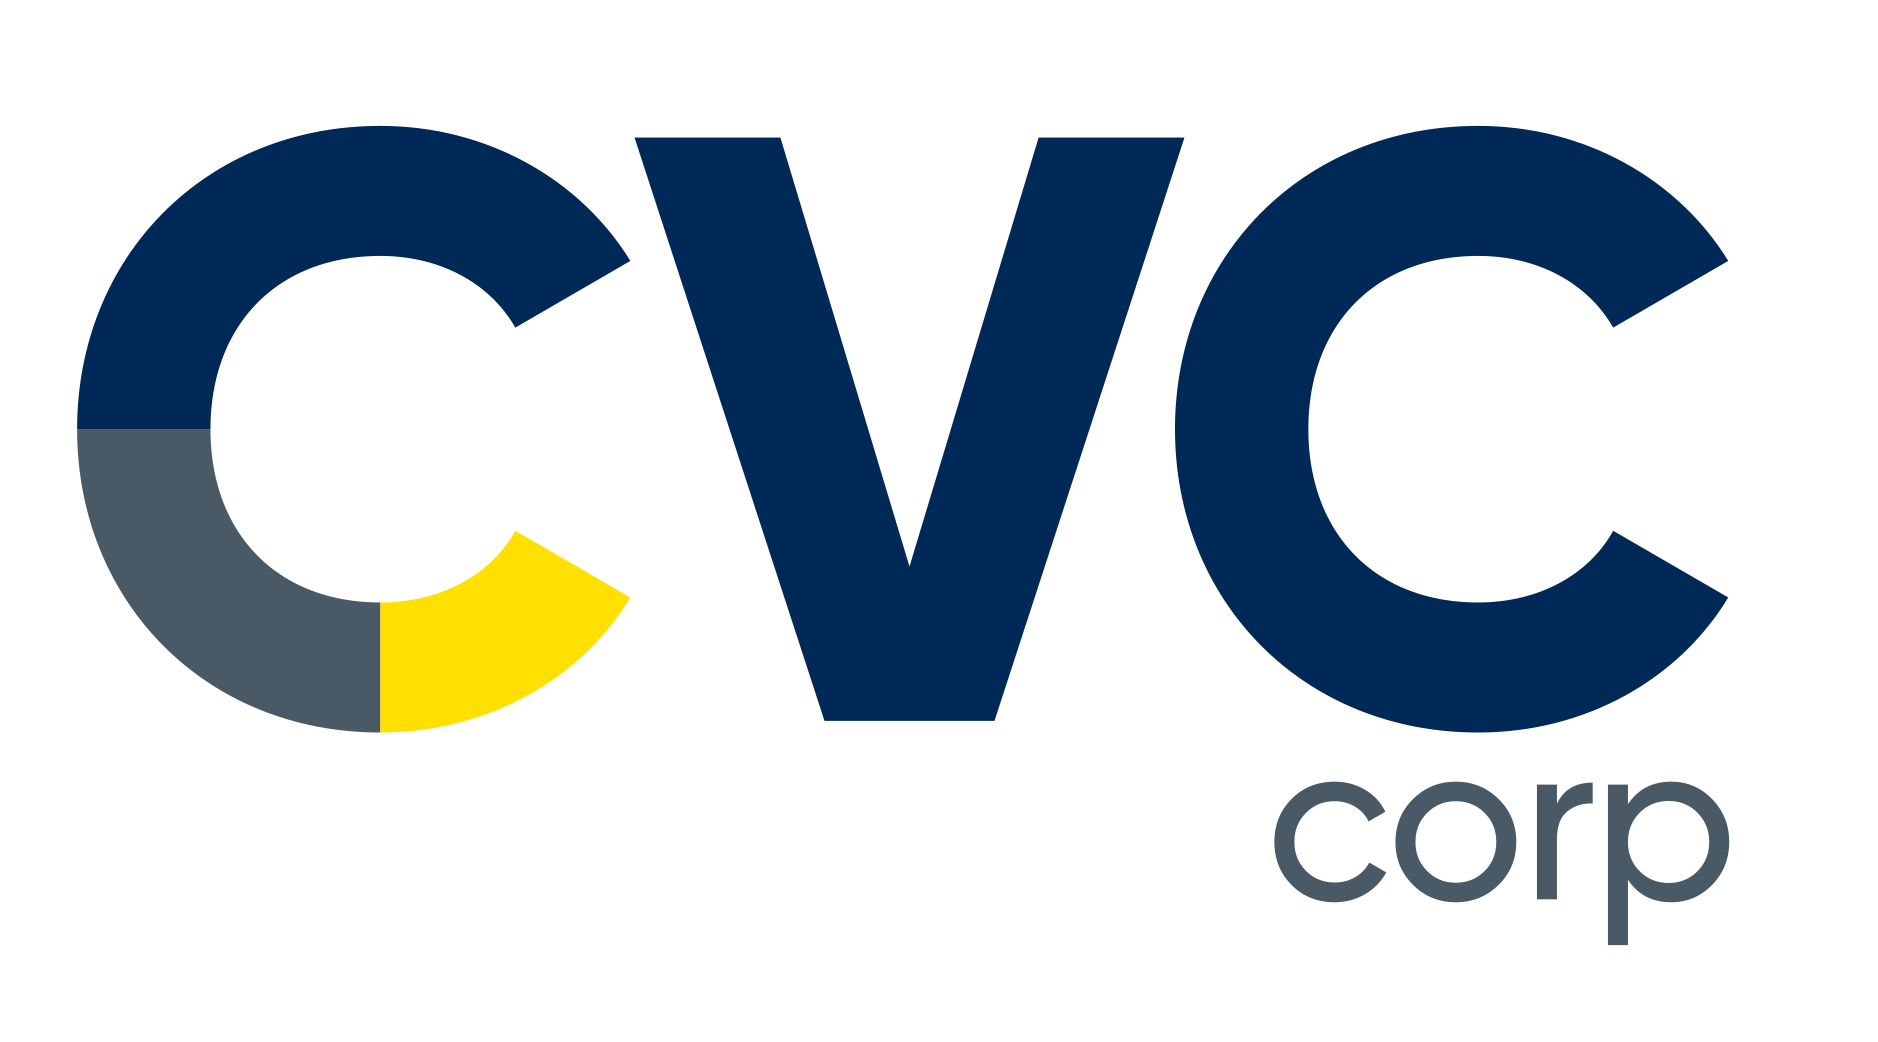 CVC Corp